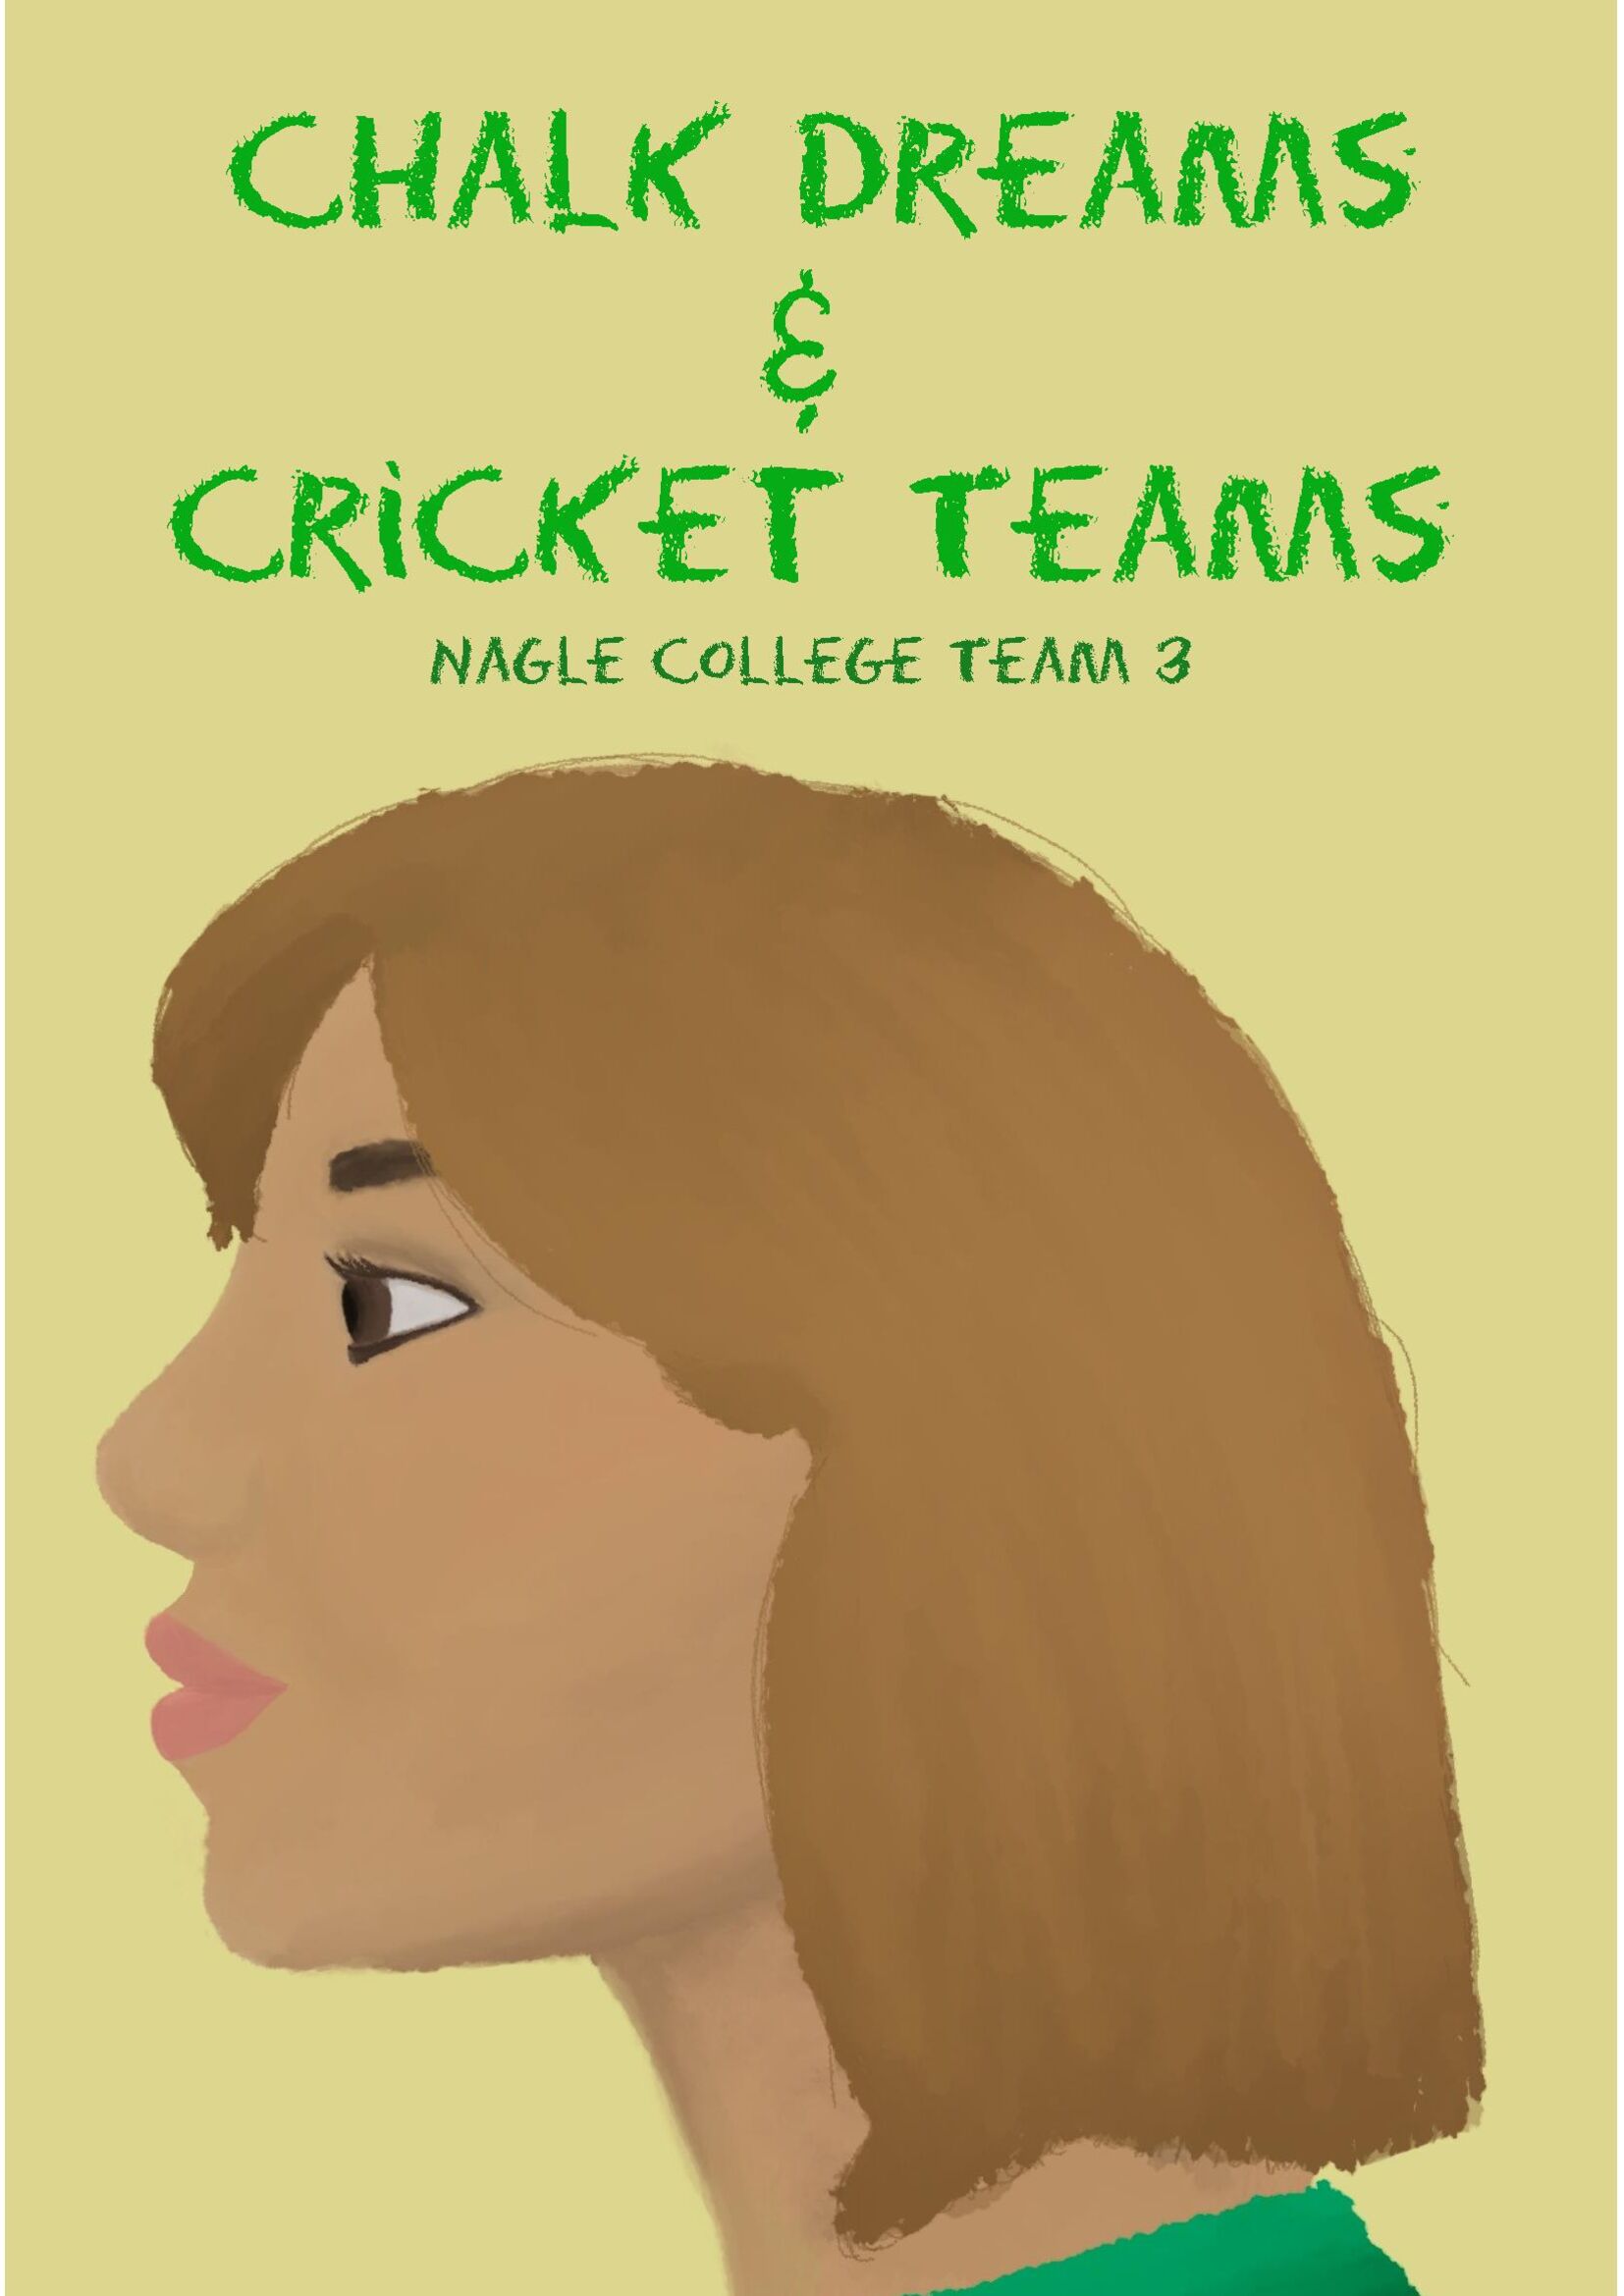 Chalk Dreams and Cricket Teams